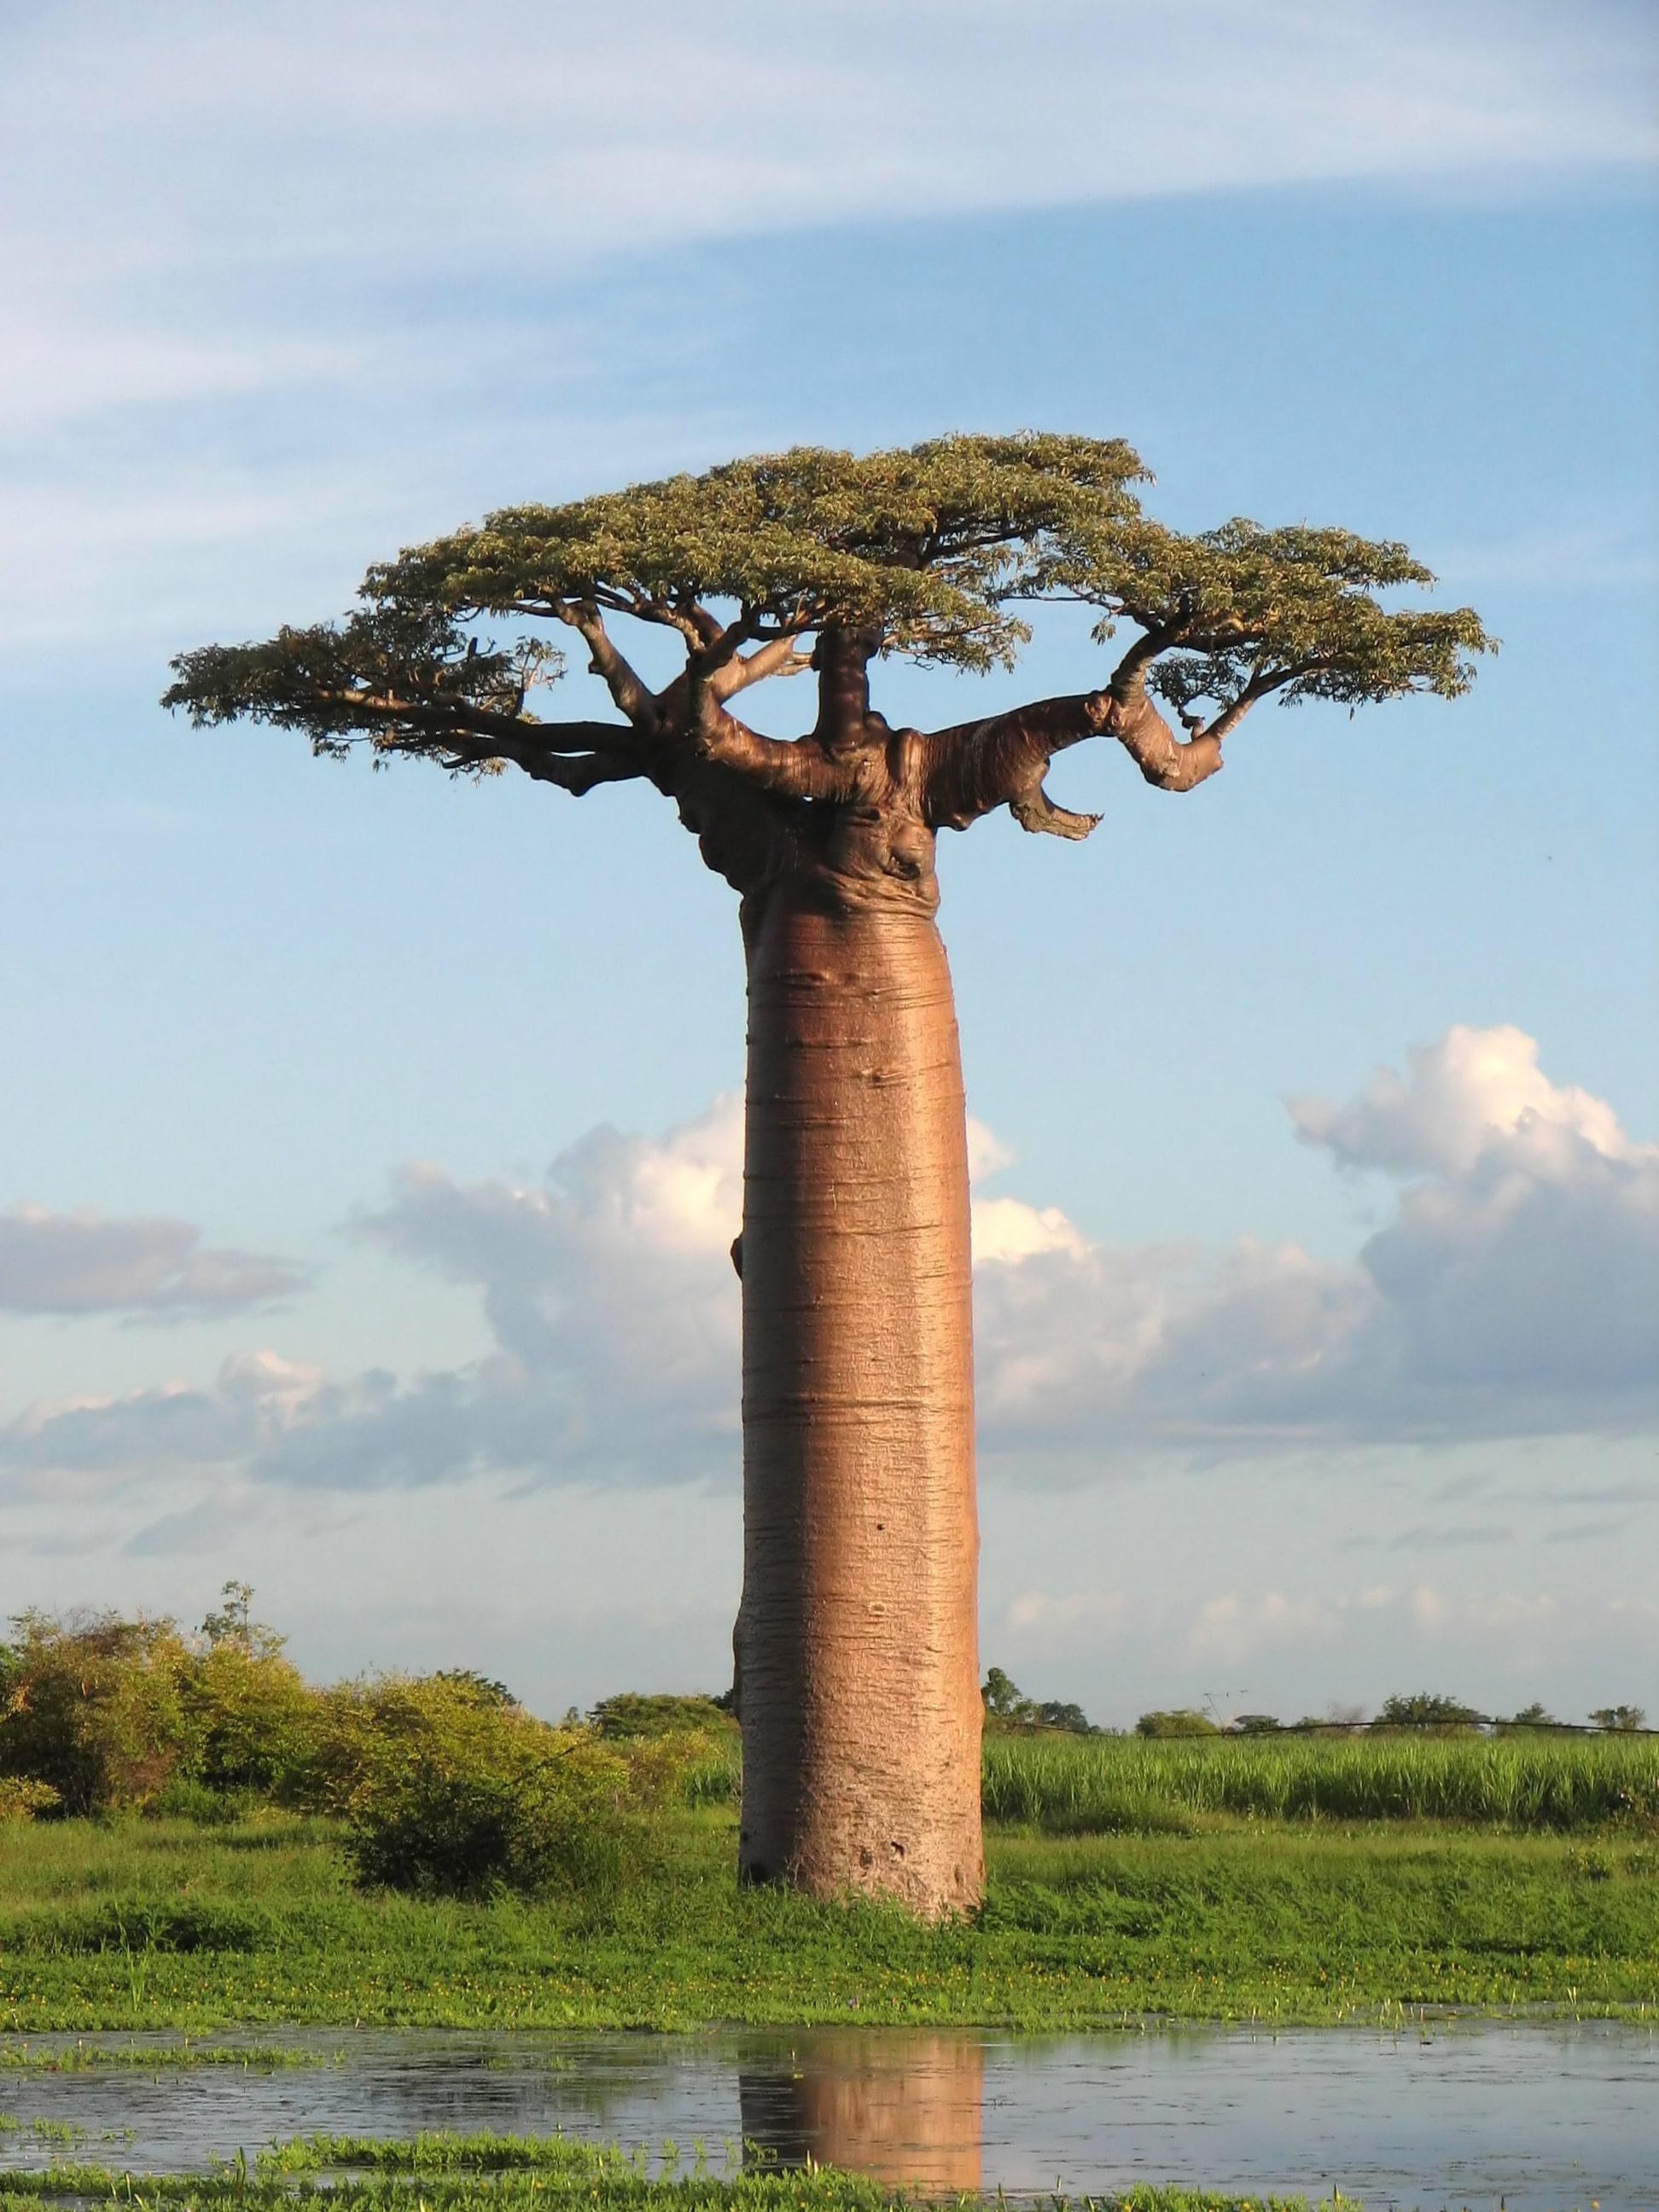 Baobab, adansonia